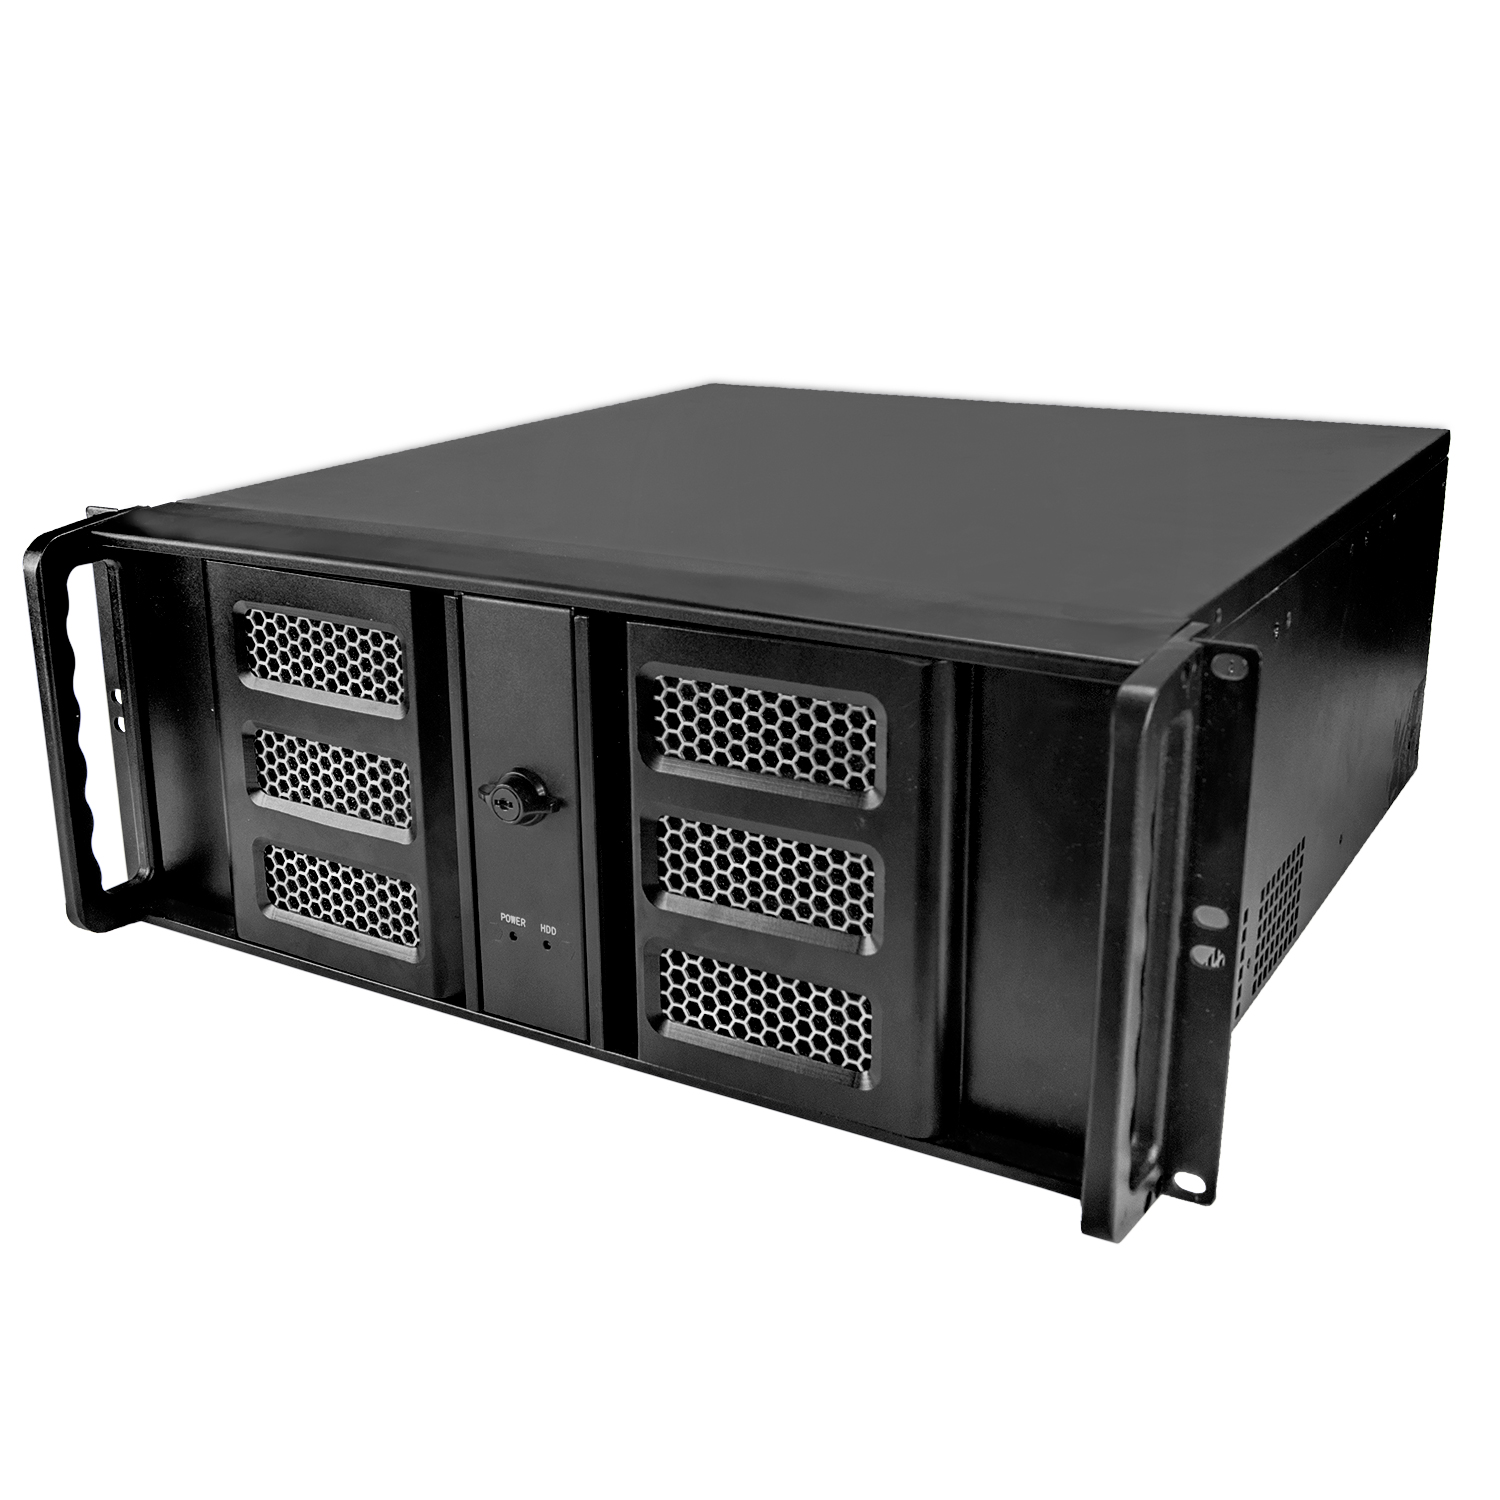 Серверный корпус 4U NR-N436D (ATX 10.2x12, 3x5.25ext, 1x3.5ext, 6x3.5int,450мм)черный,NegoRack